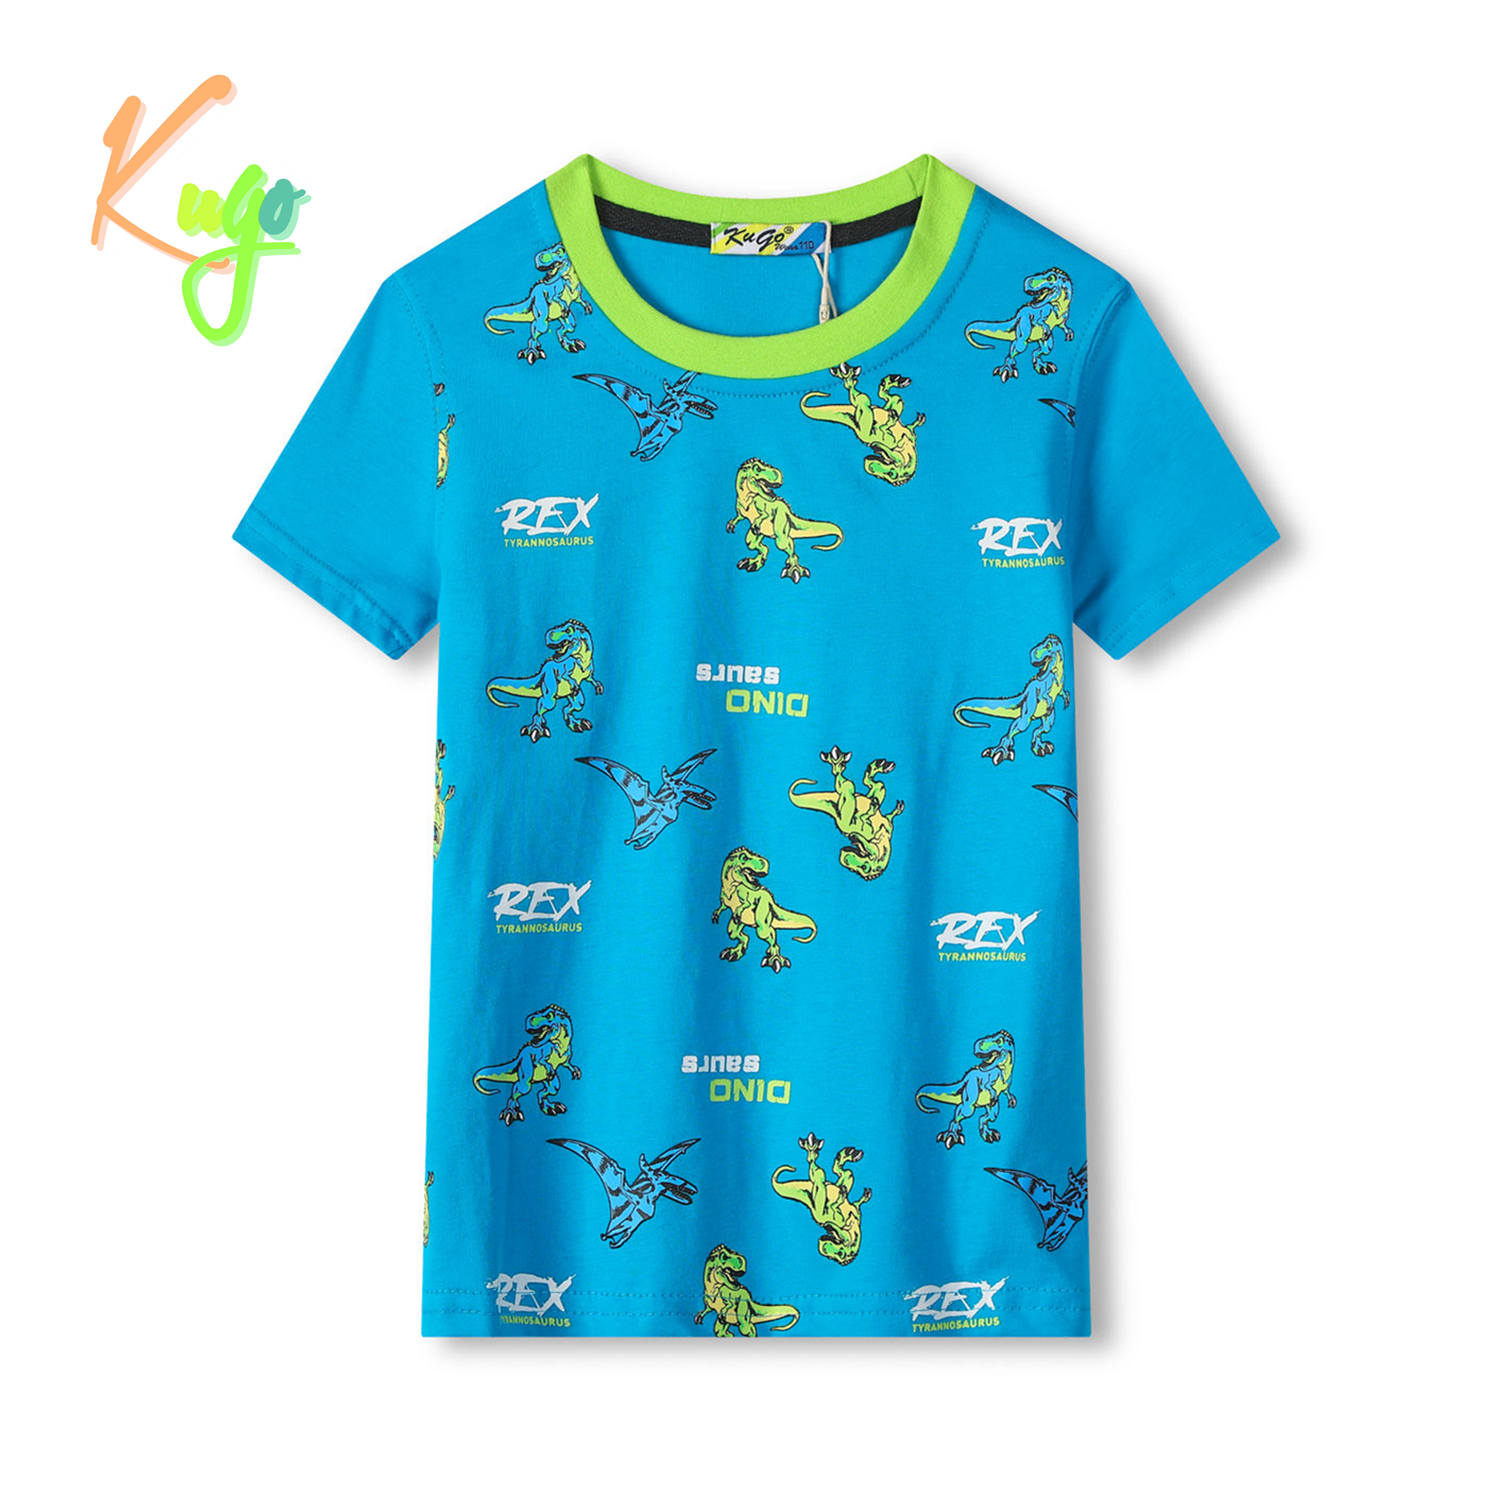 Chlapecké tričko - KUGO TM8574C, tyrkysová Barva: Tyrkysová, Velikost: 116